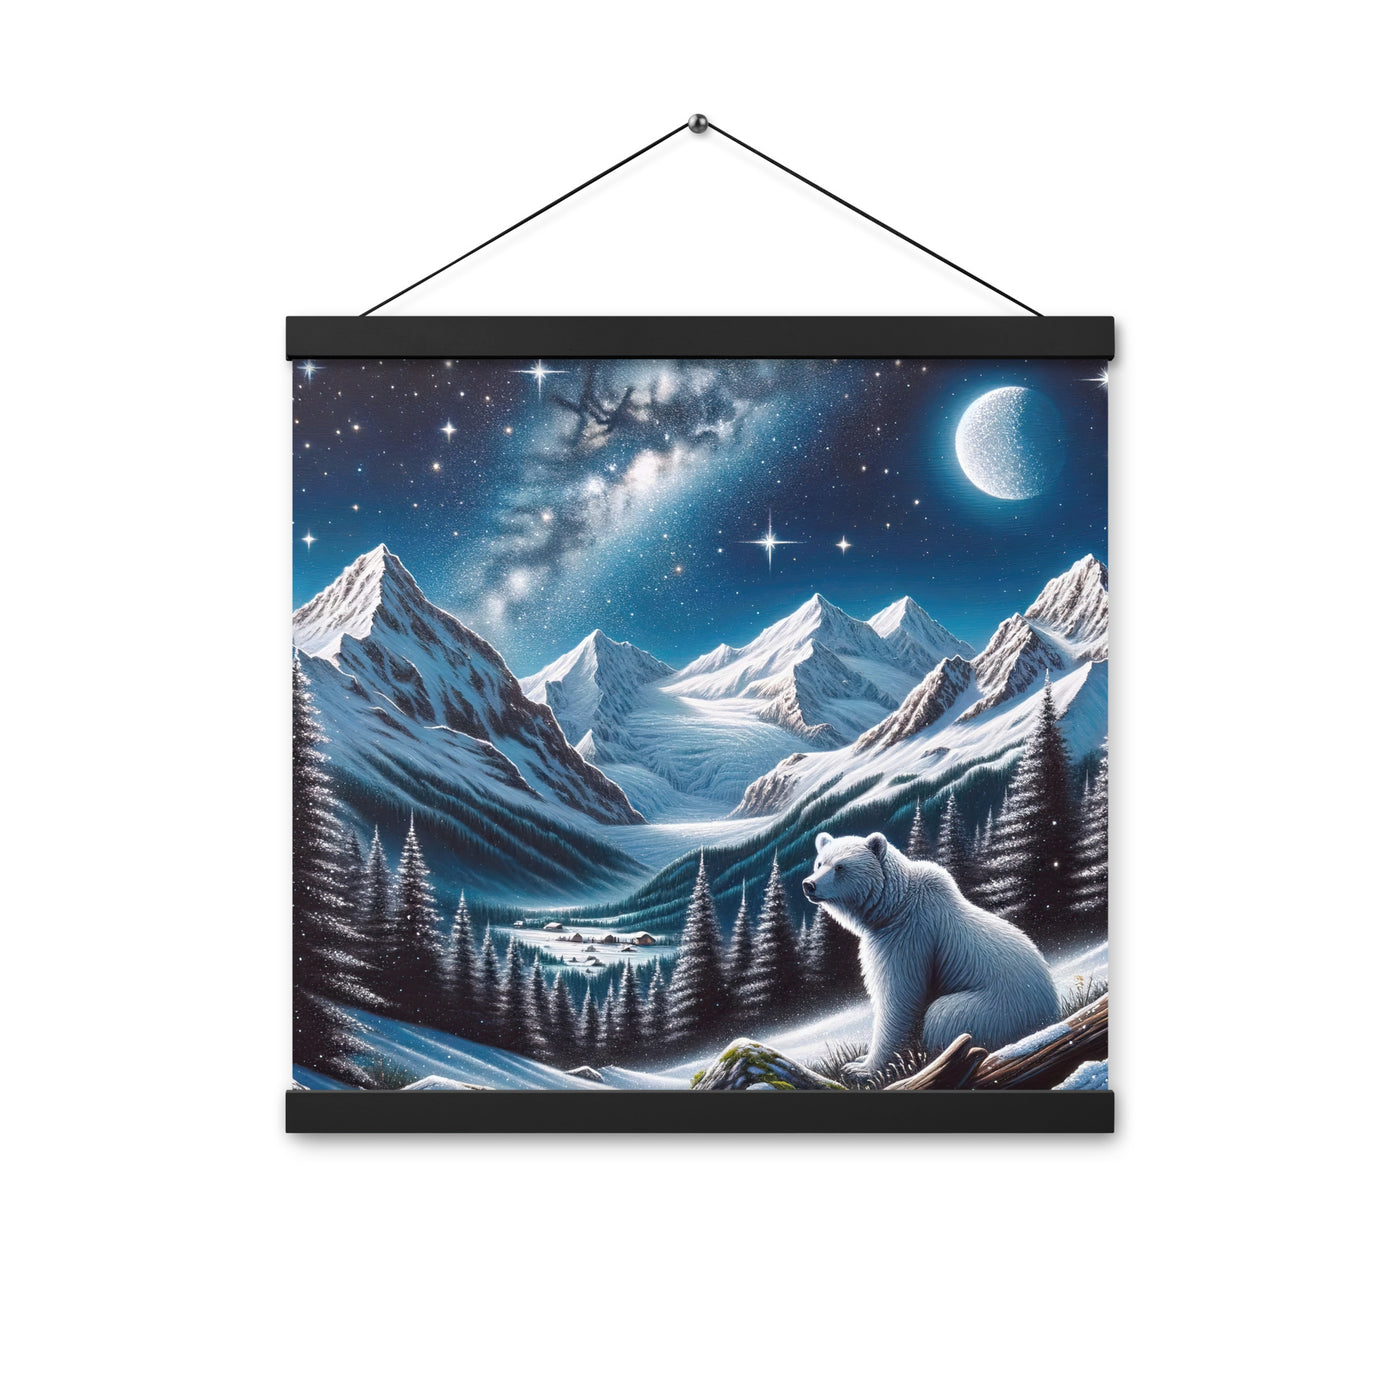 Sternennacht und Eisbär: Acrylgemälde mit Milchstraße, Alpen und schneebedeckte Gipfel - Premium Poster mit Aufhängung camping xxx yyy zzz 40.6 x 40.6 cm